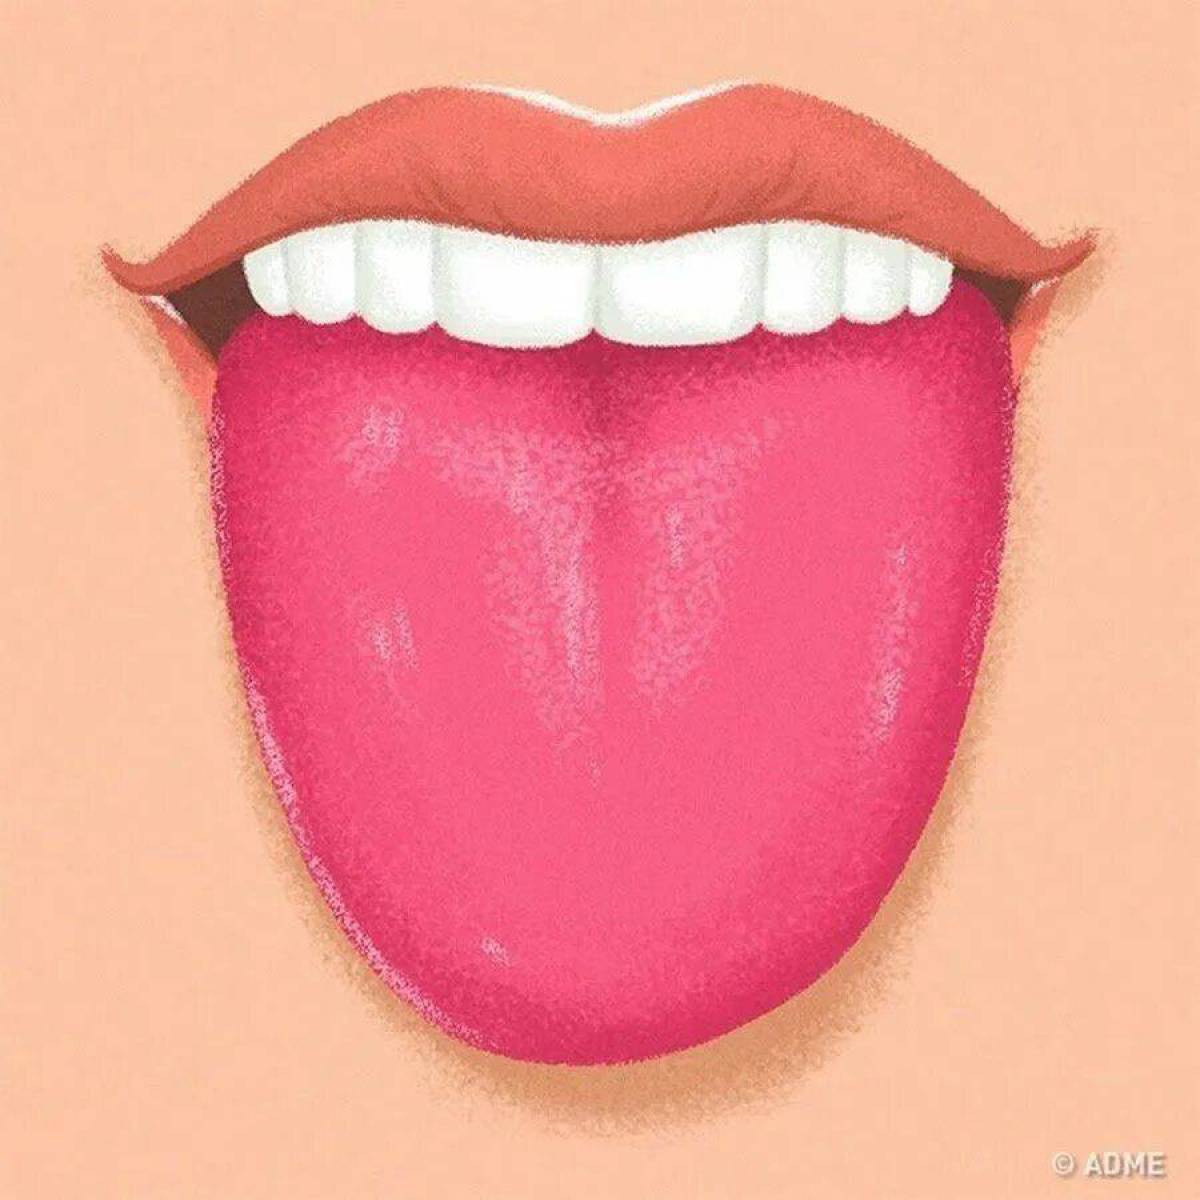 Свесив набок длинный розовый язык